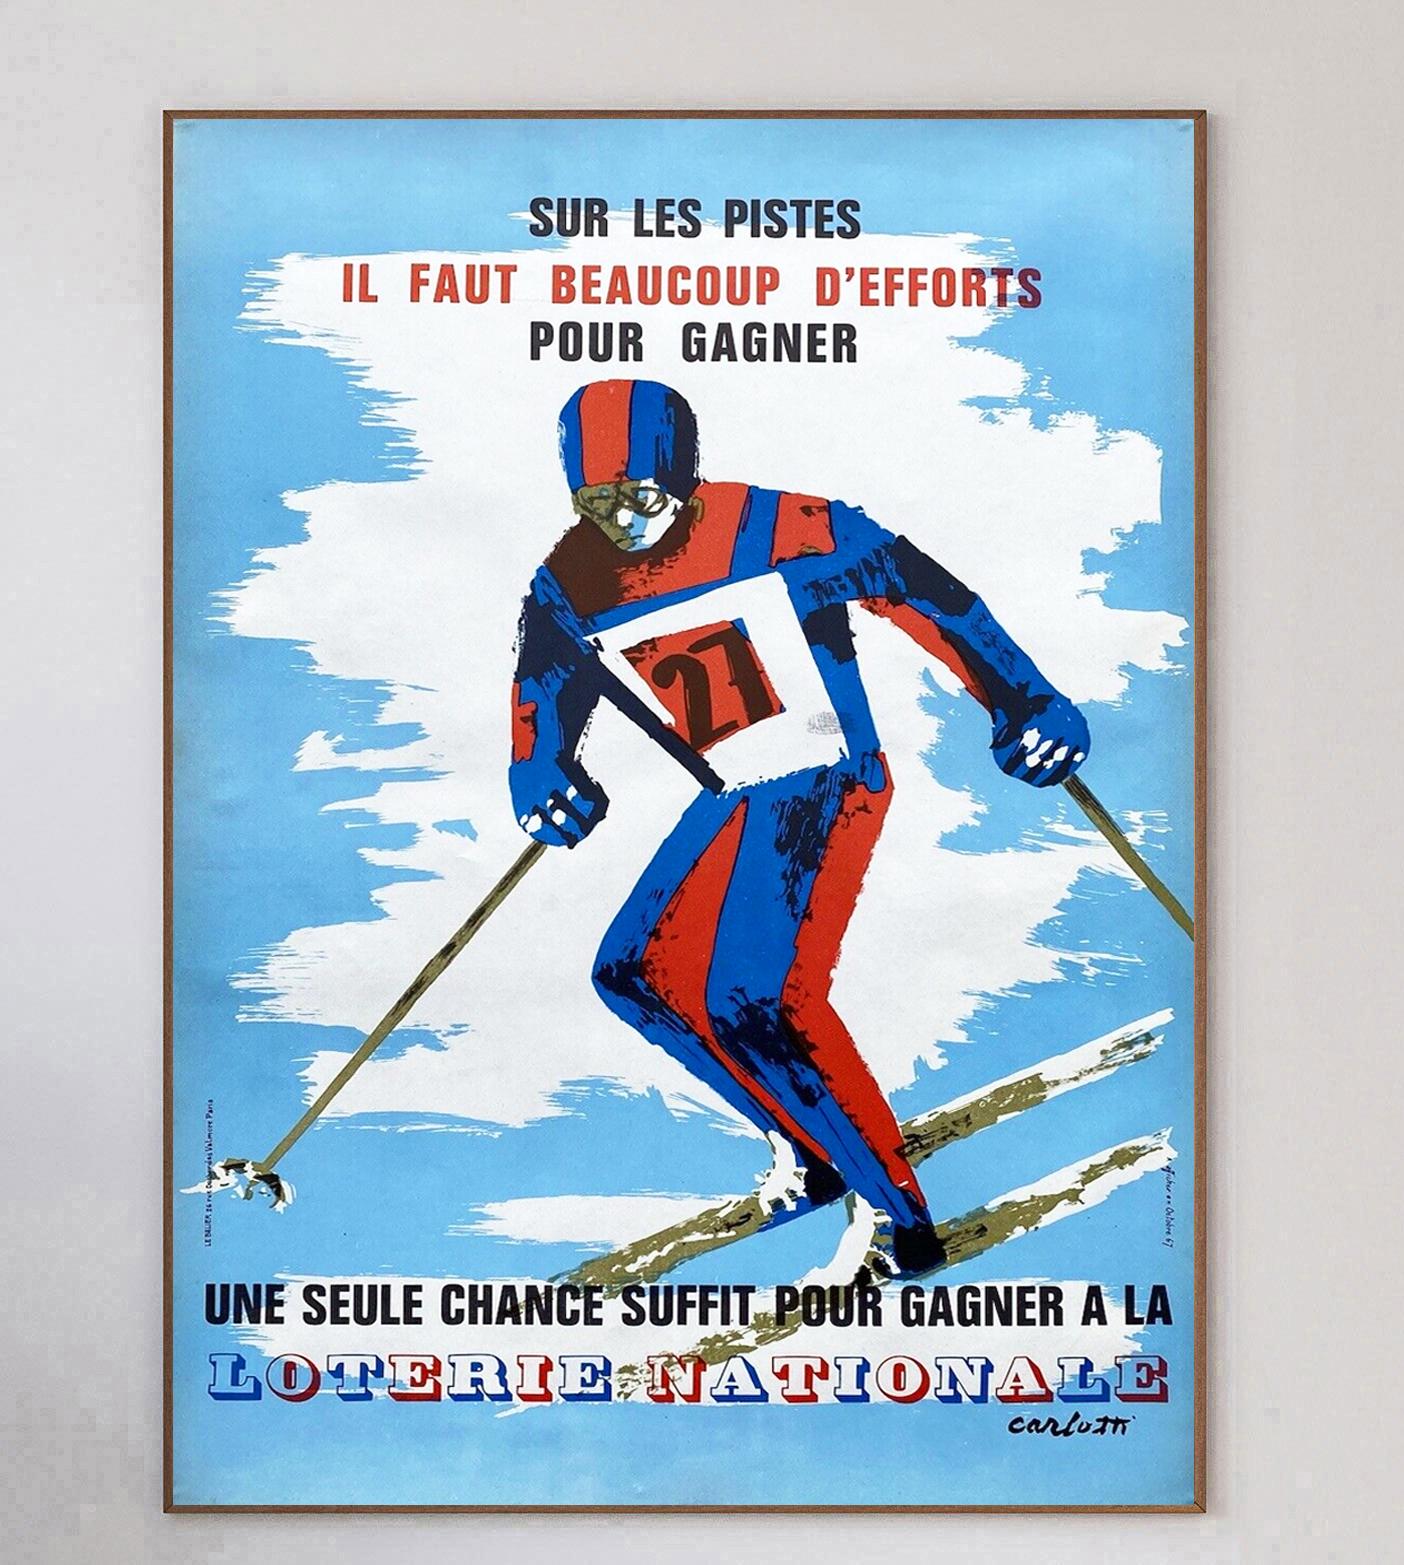 Dieses schöne und farbenfrohe Plakat stammt aus dem Jahr 1967 und wirbt für die Loterie Nationale (französische Nationallotterie). Mit der Aufschrift 